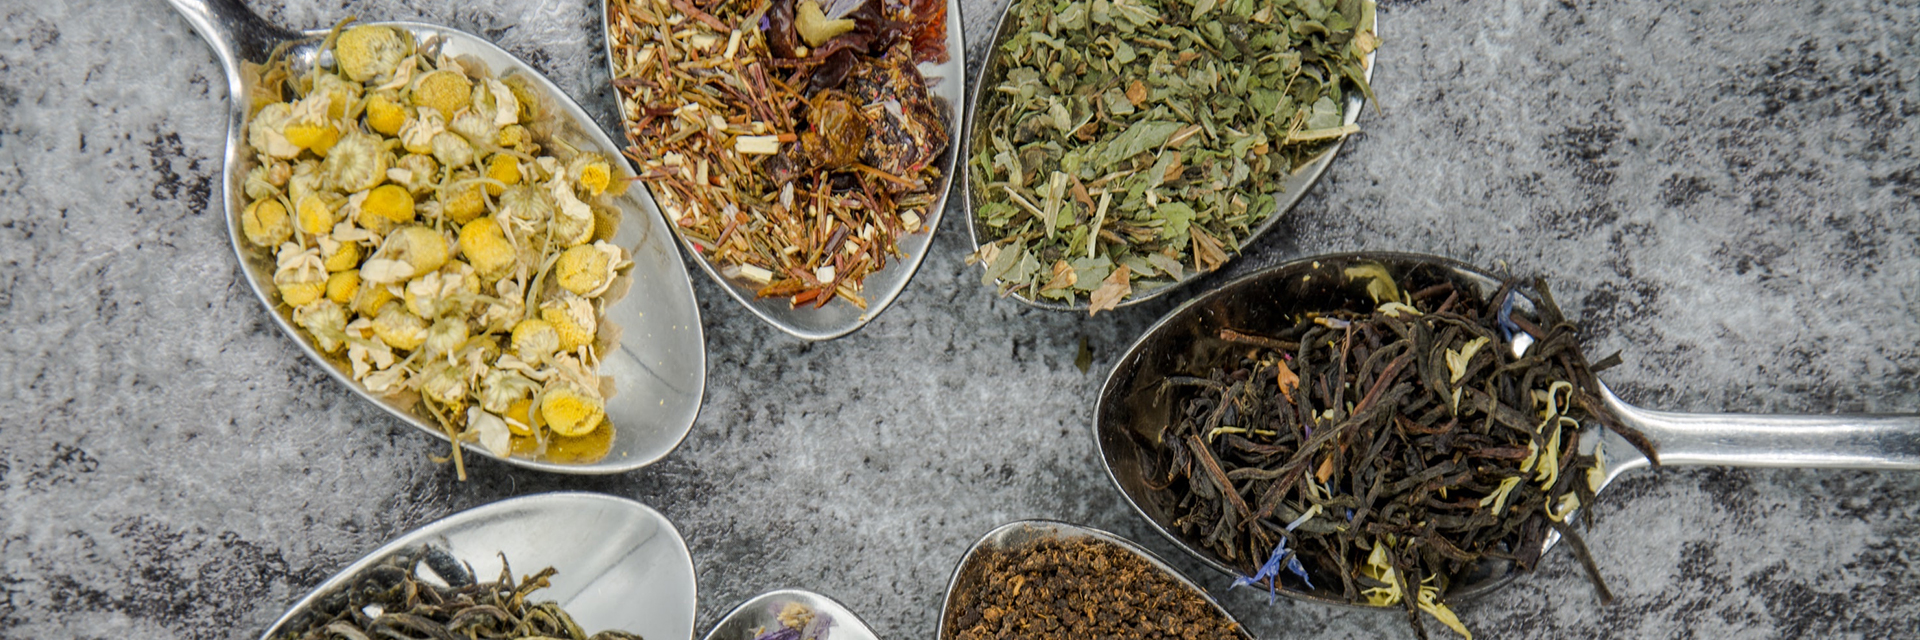 herbal-tea-varieties-in-spoon